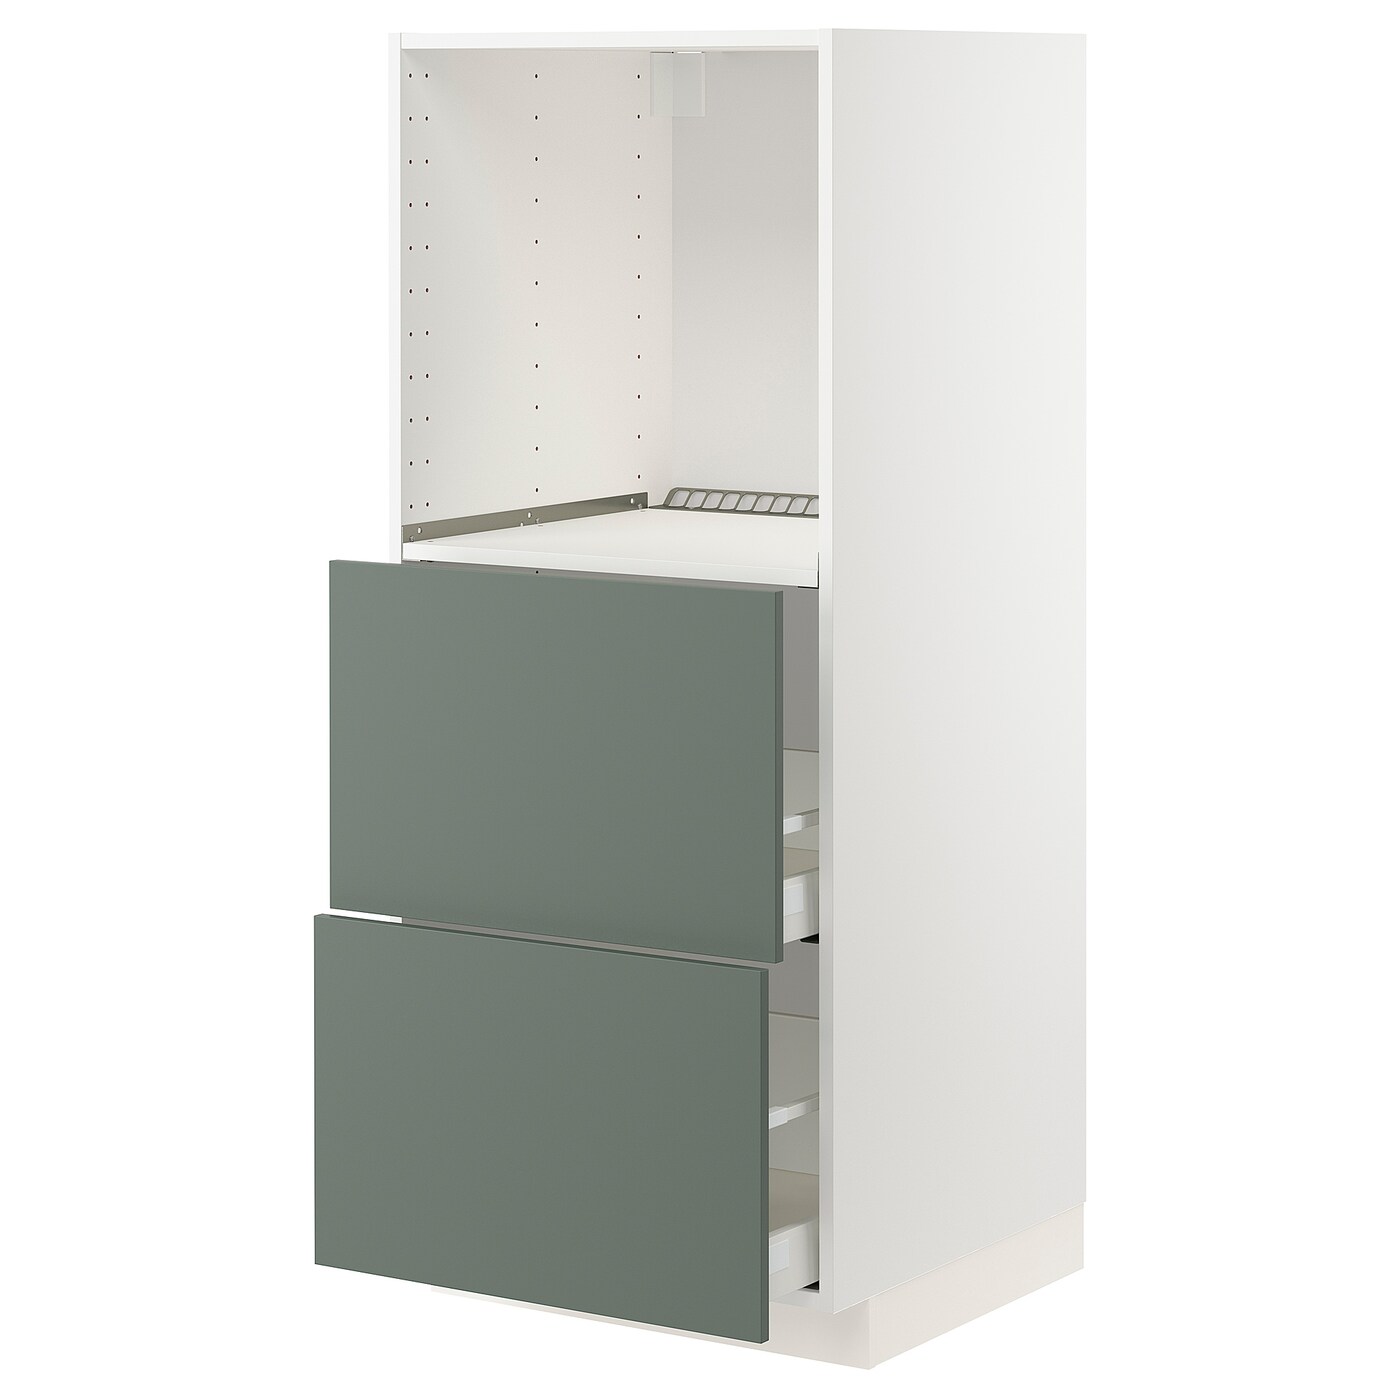 Напольный шкаф  - IKEA METOD MAXIMERA, 148x61,6x60см, белый/серый, МЕТОД МАКСИМЕРА ИКЕА